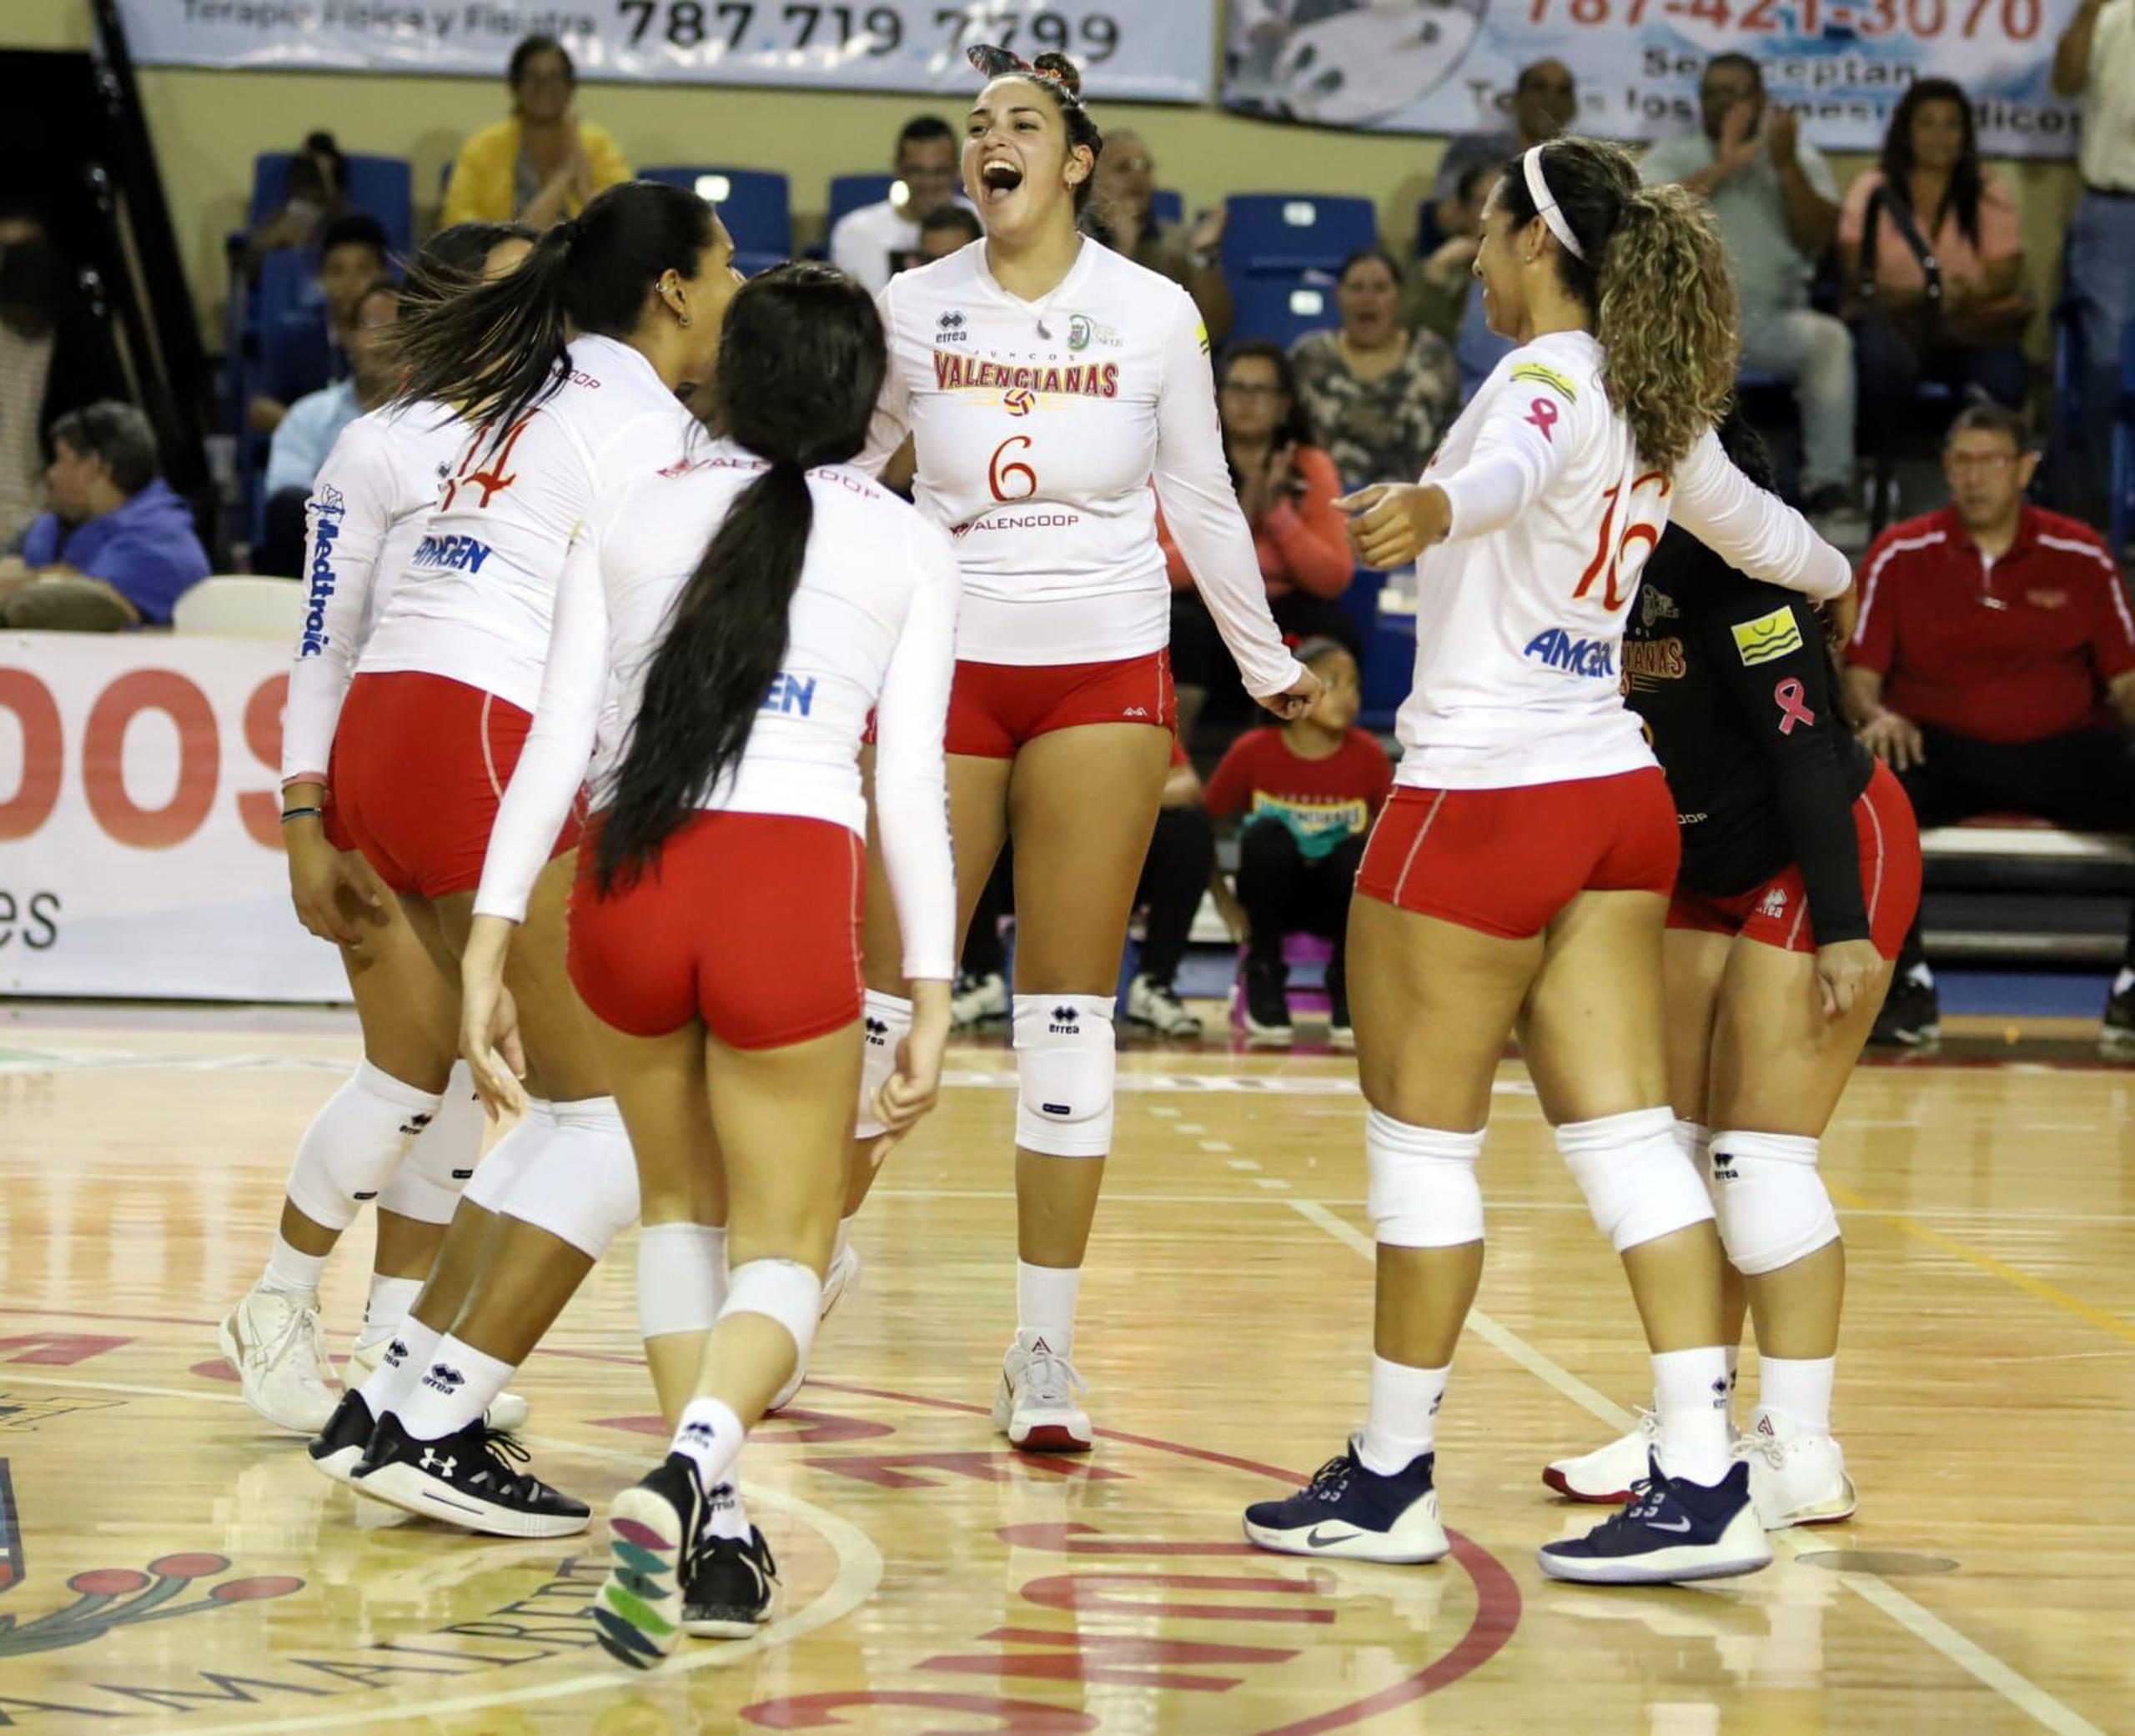 La Liga de Voleibol Superior Femenino está disponible a esperar hasta junio para reanudar el torneo regular.